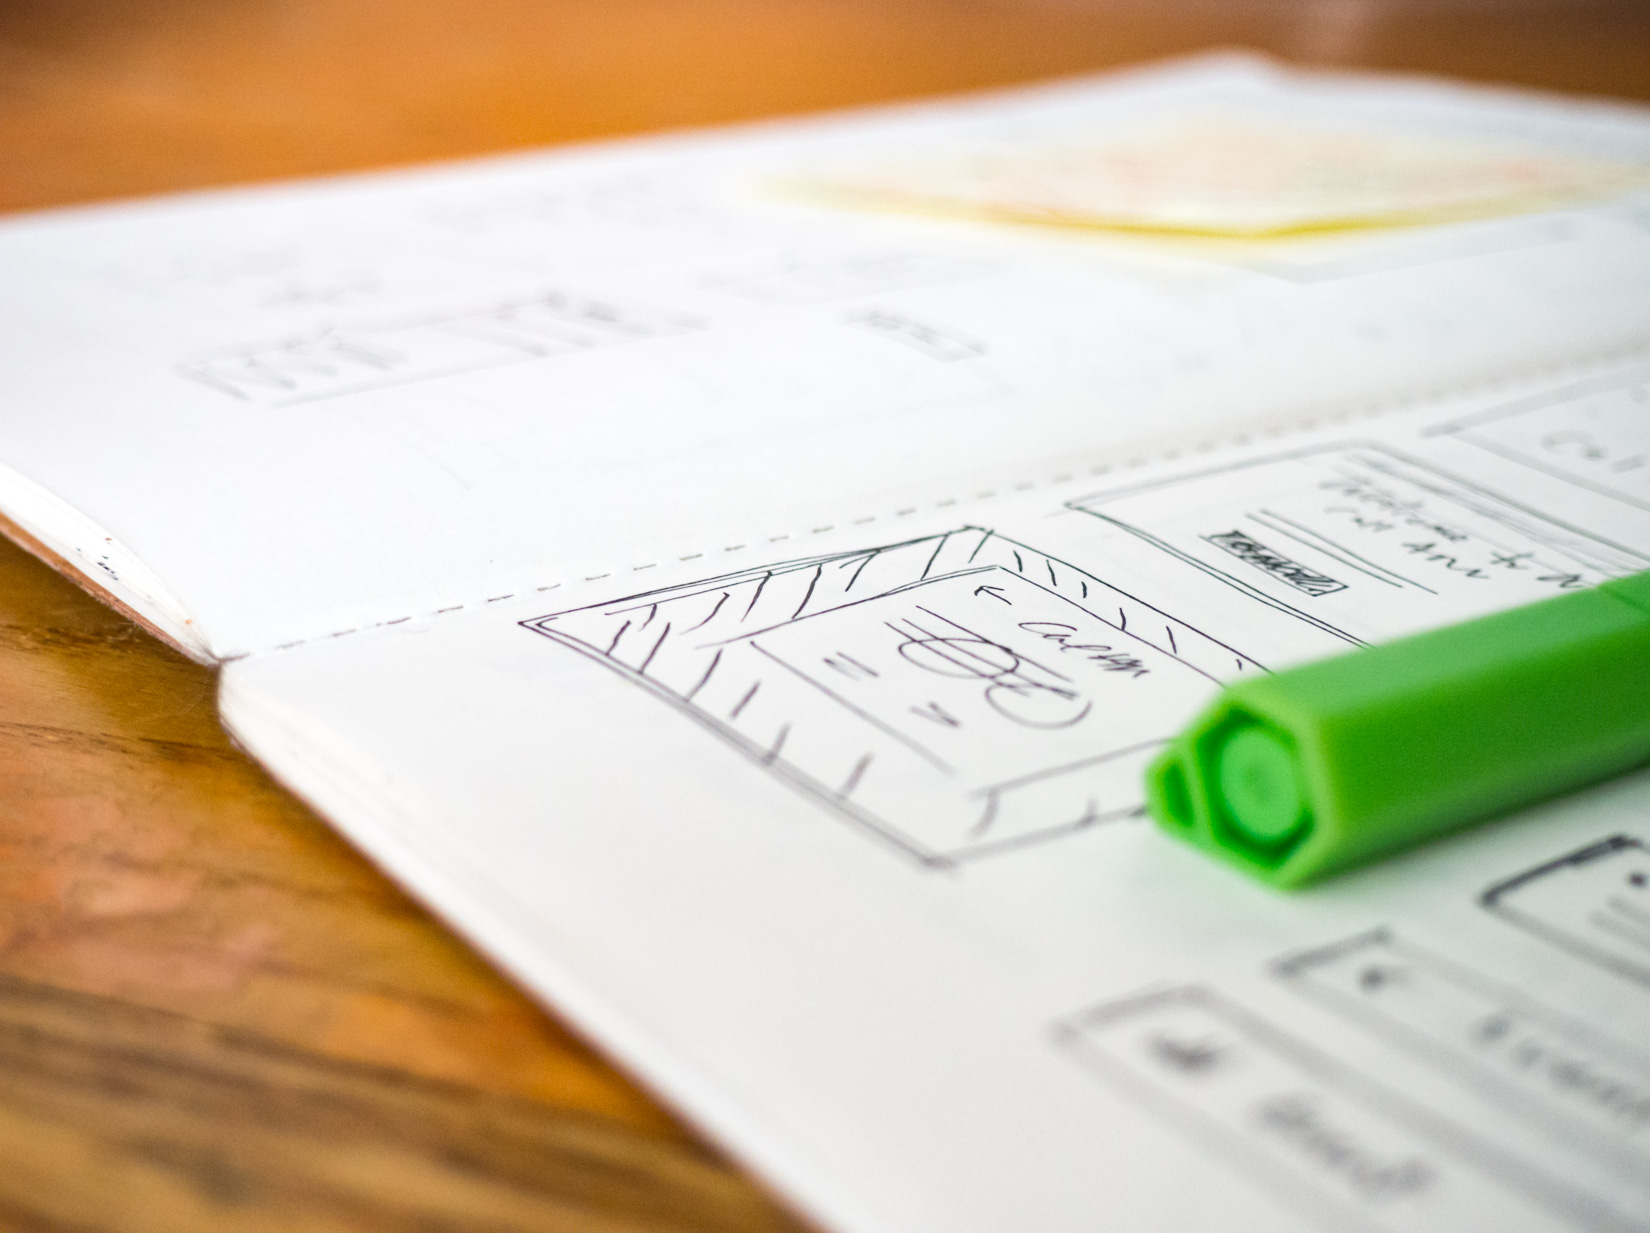 Open Sketchbook on Desk with Green Pen – FOCA